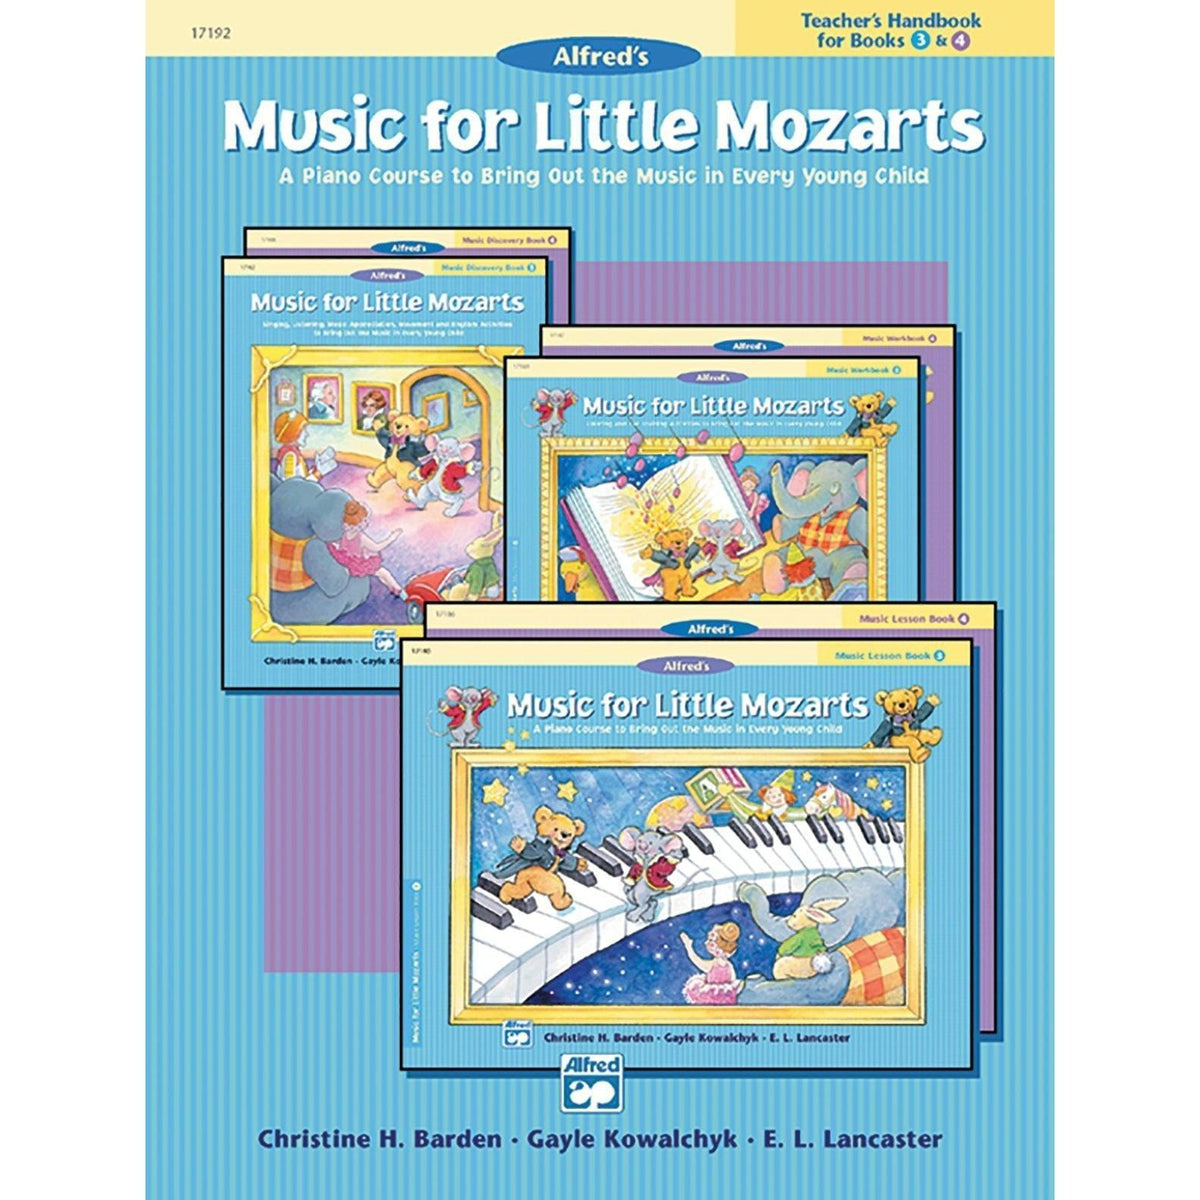 Music For Little Mozarts | Teachers Handbook 3-4